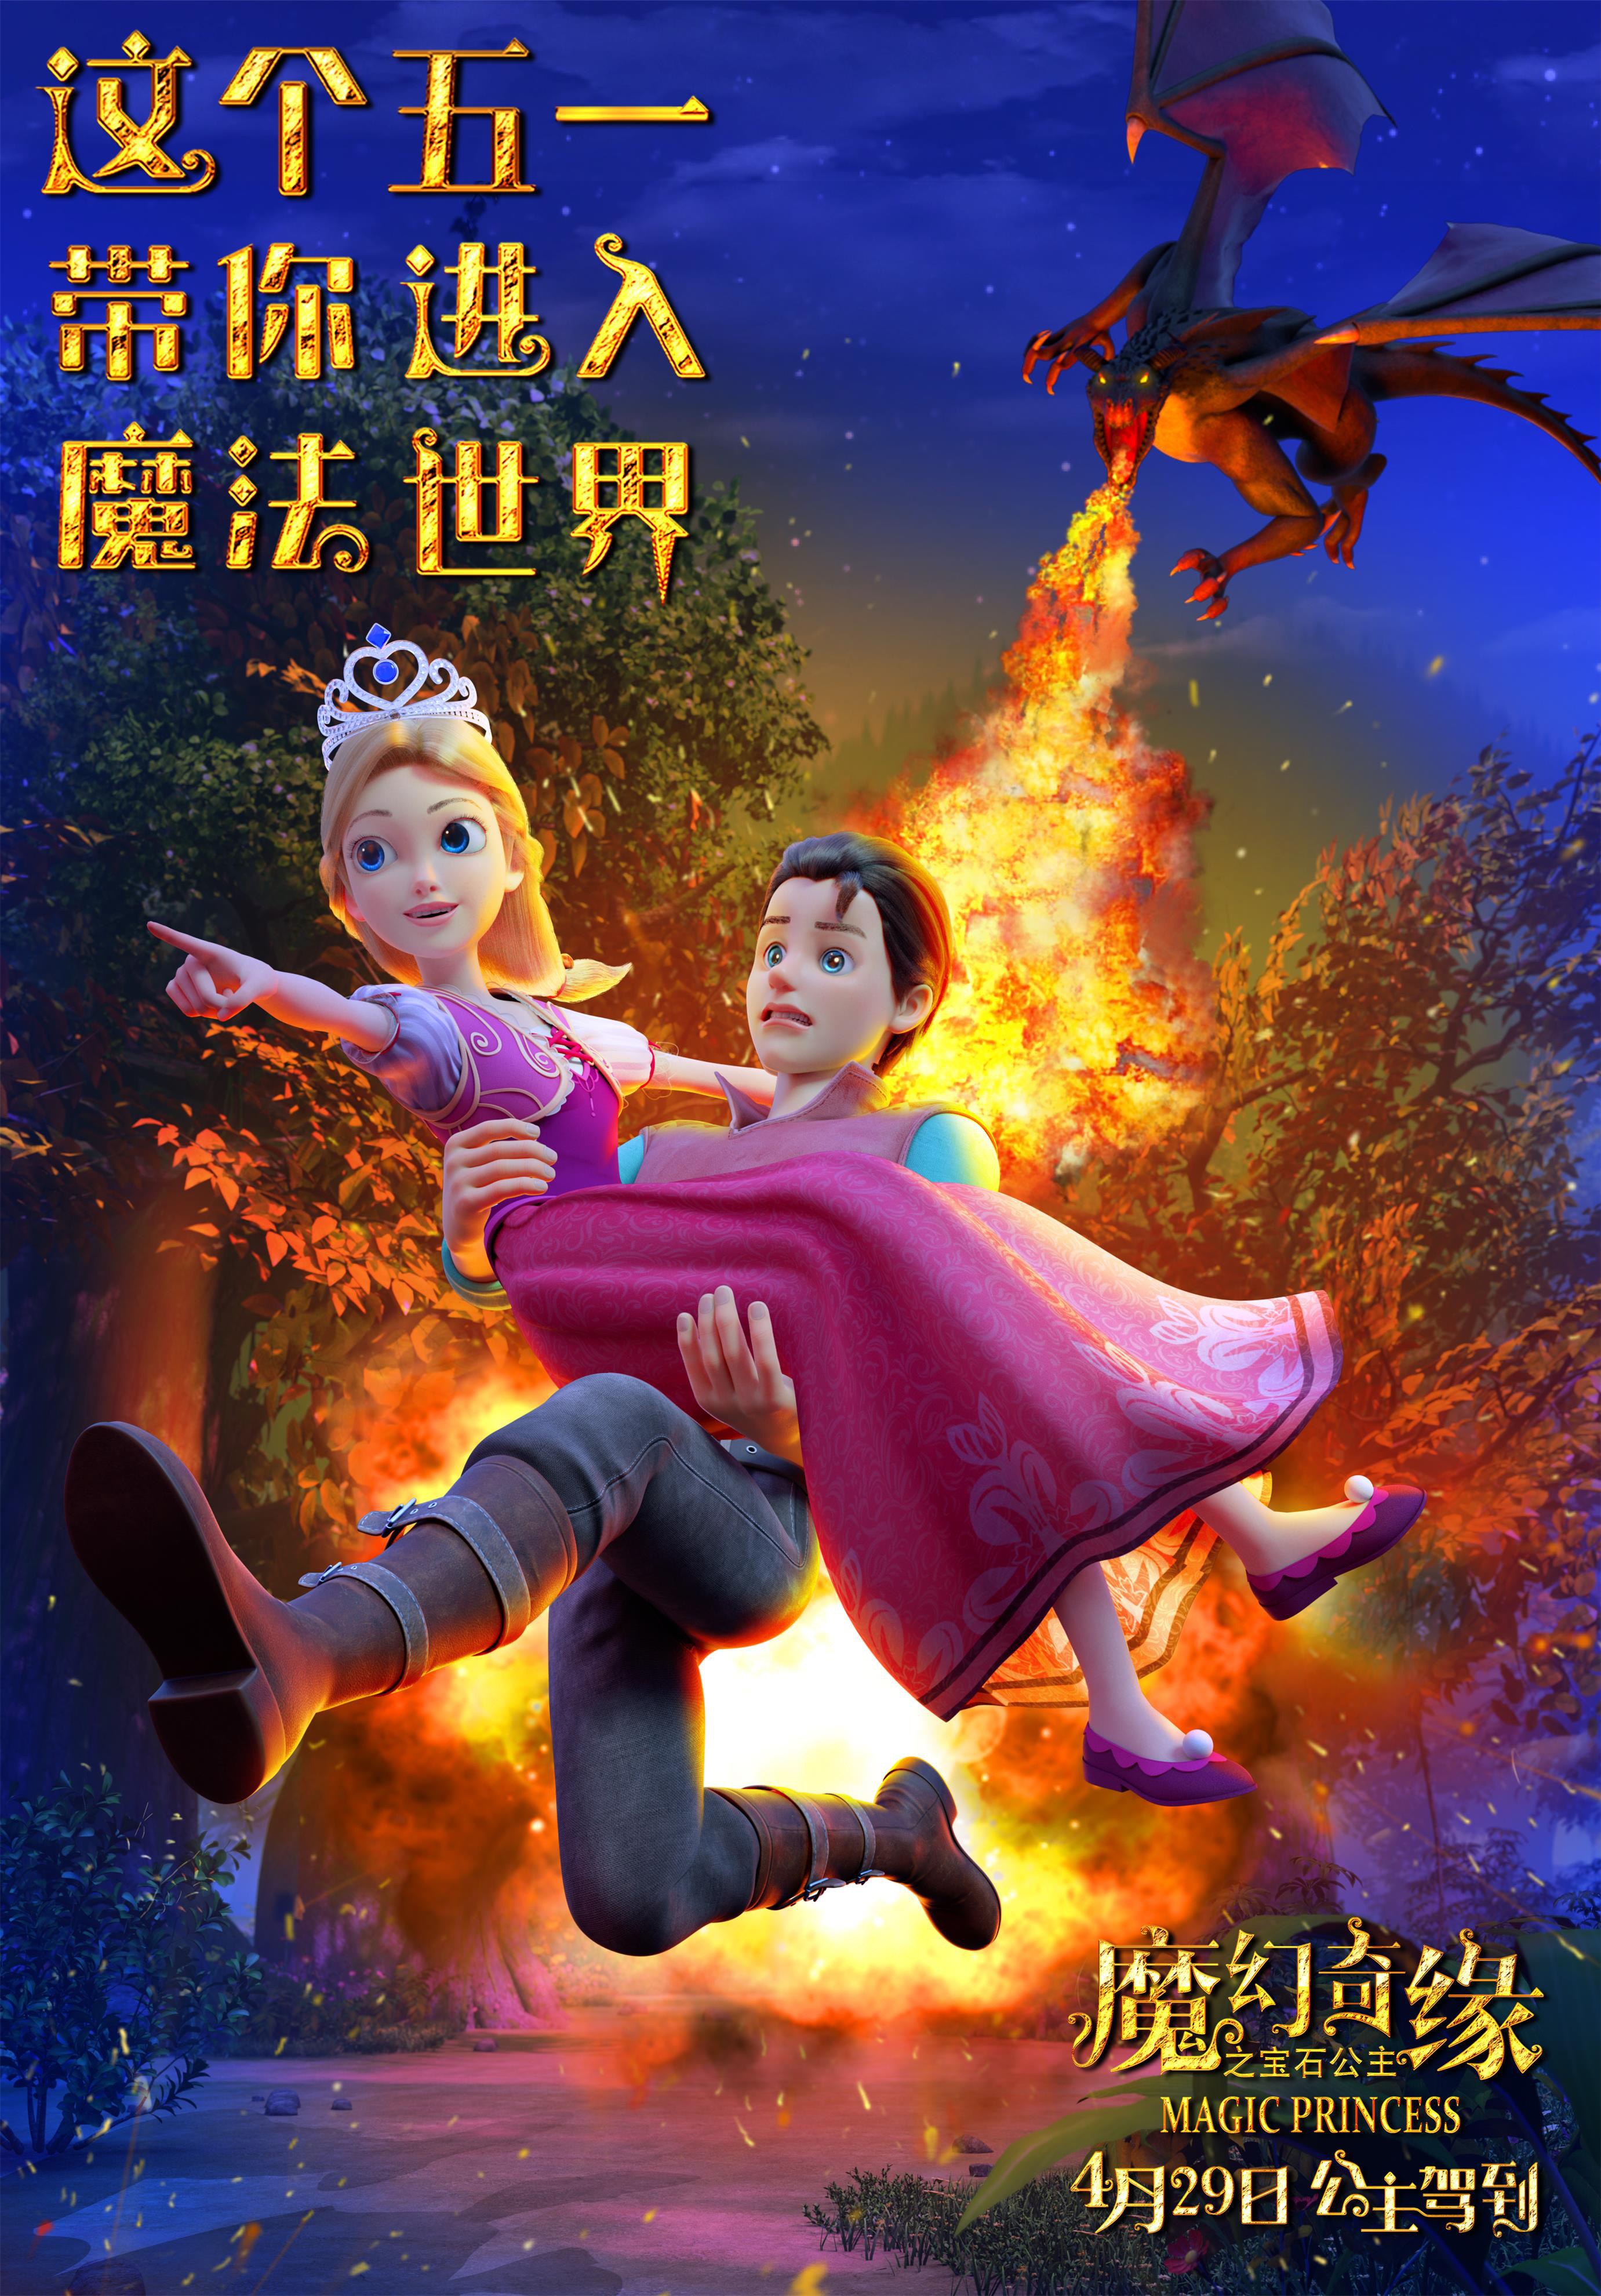 动画《魔幻奇缘之宝石公主》发布“逃亡版”海报